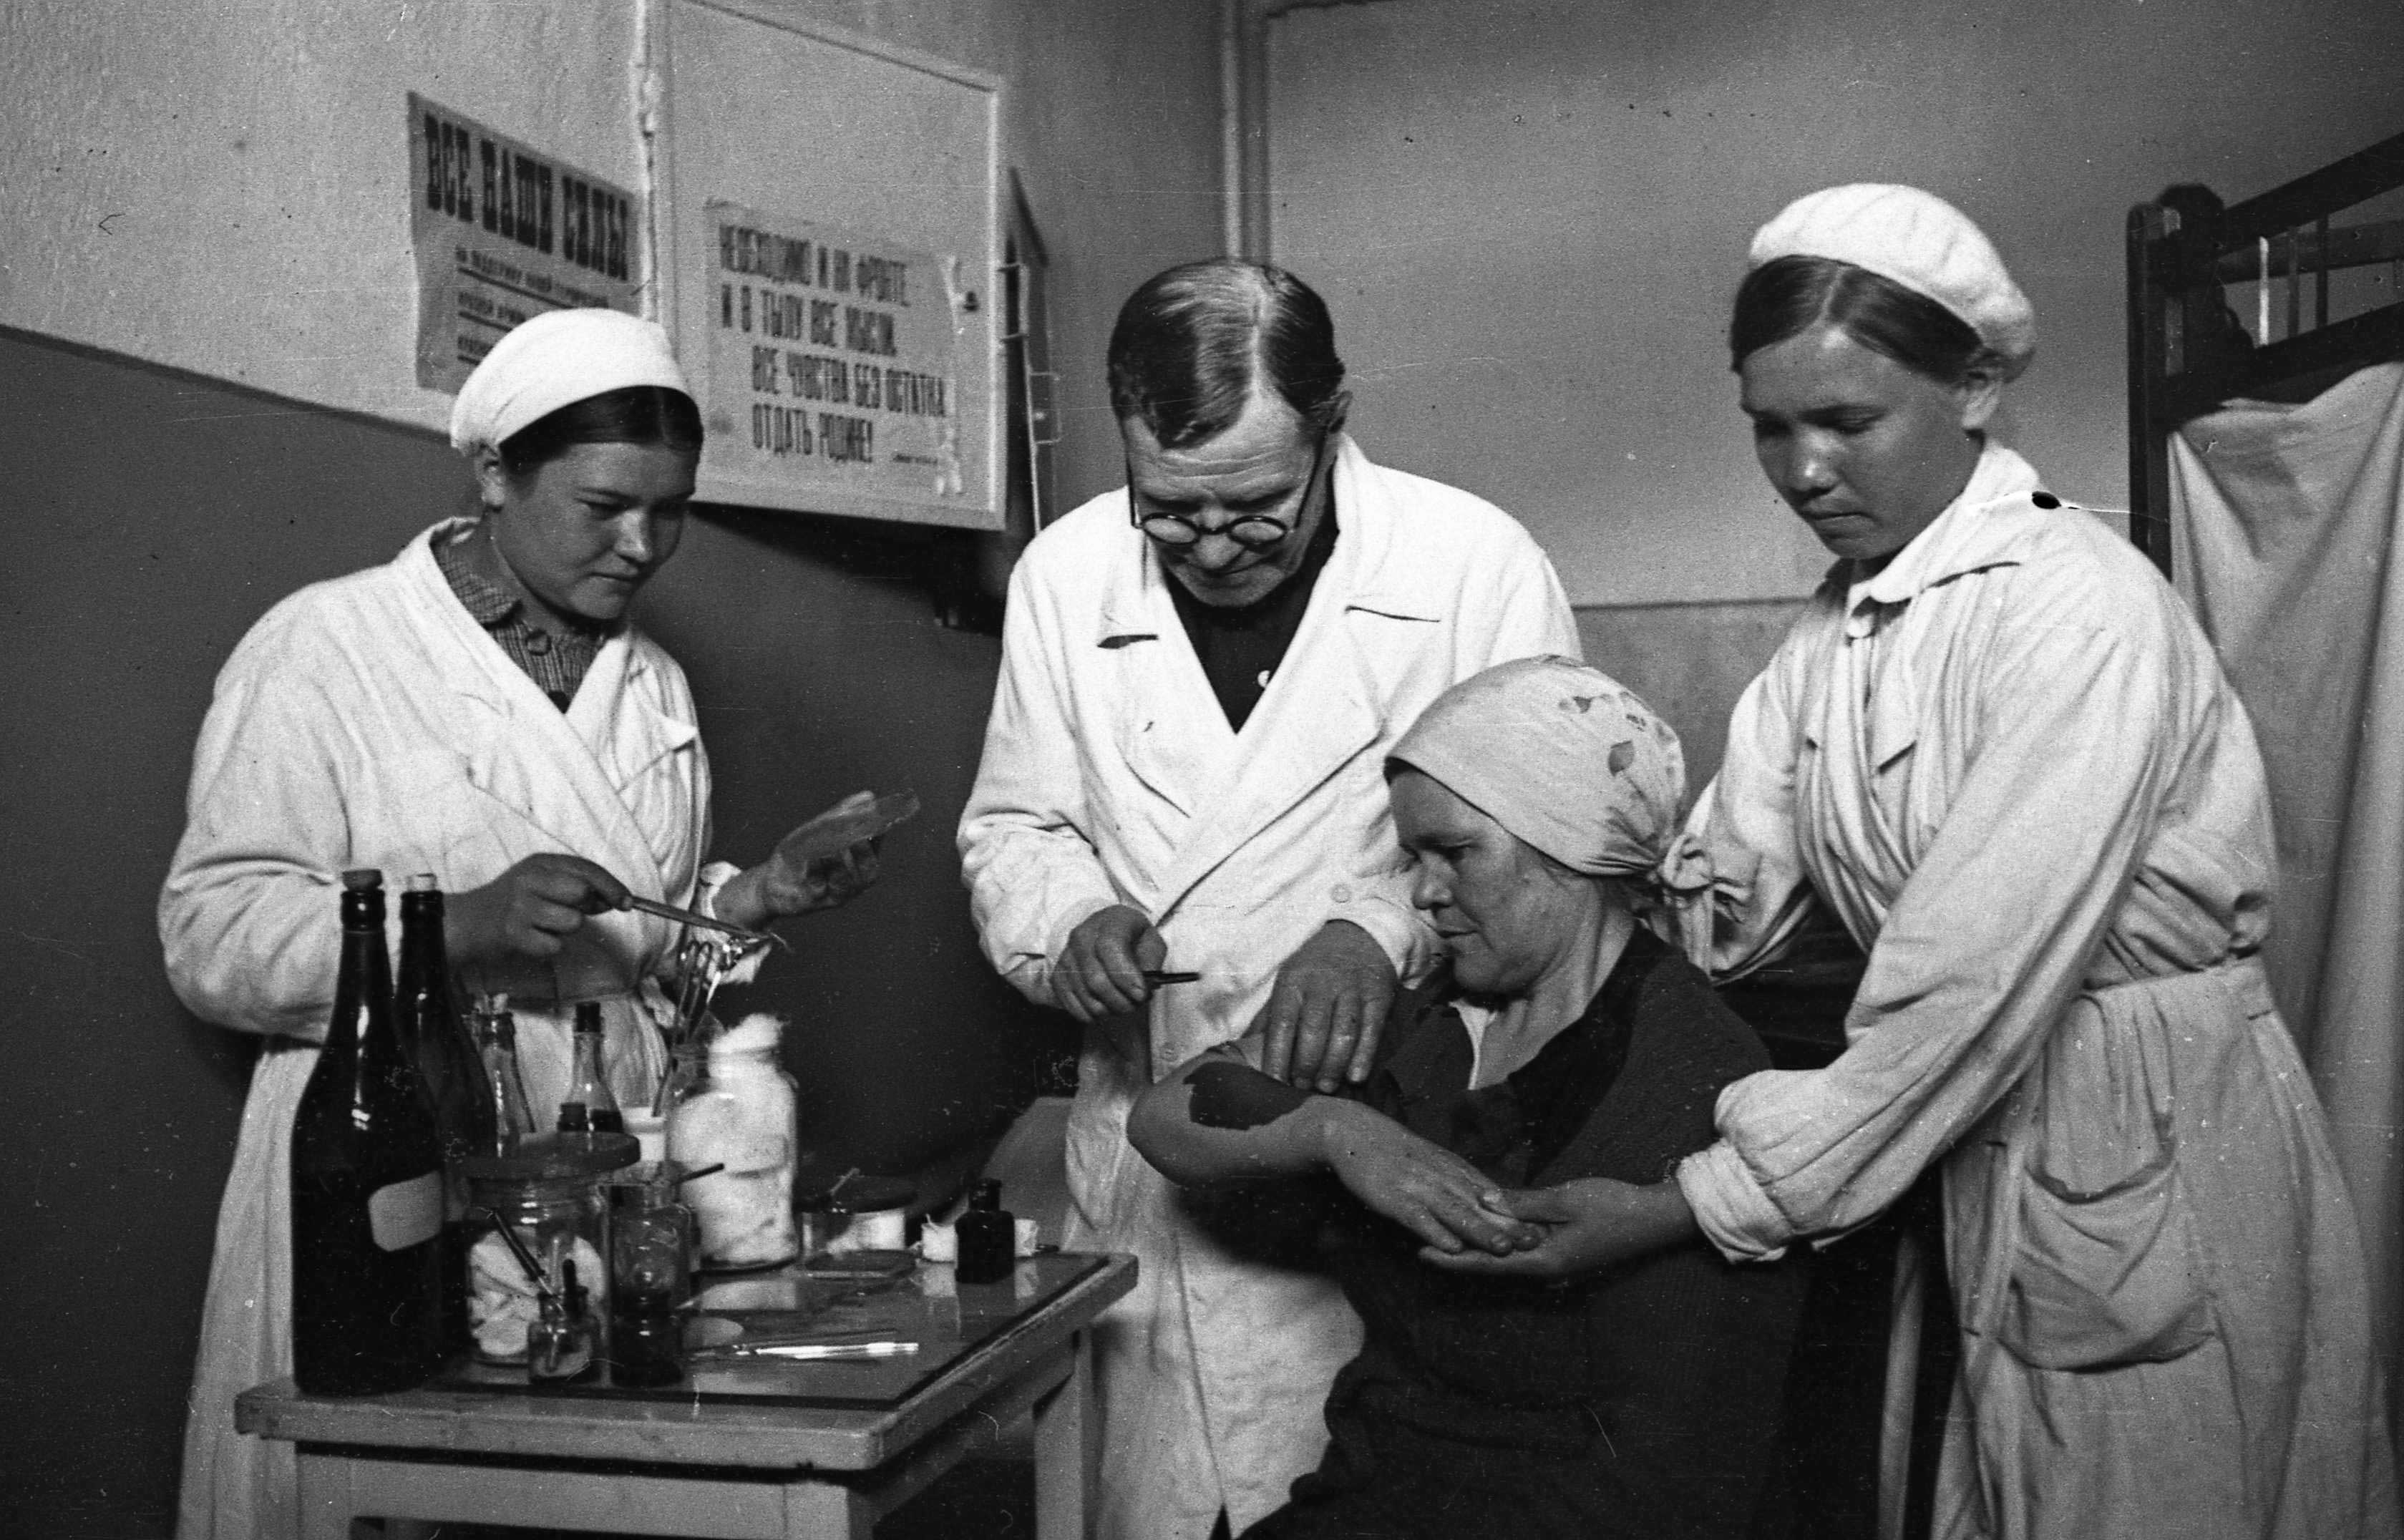 Медицина в СССР